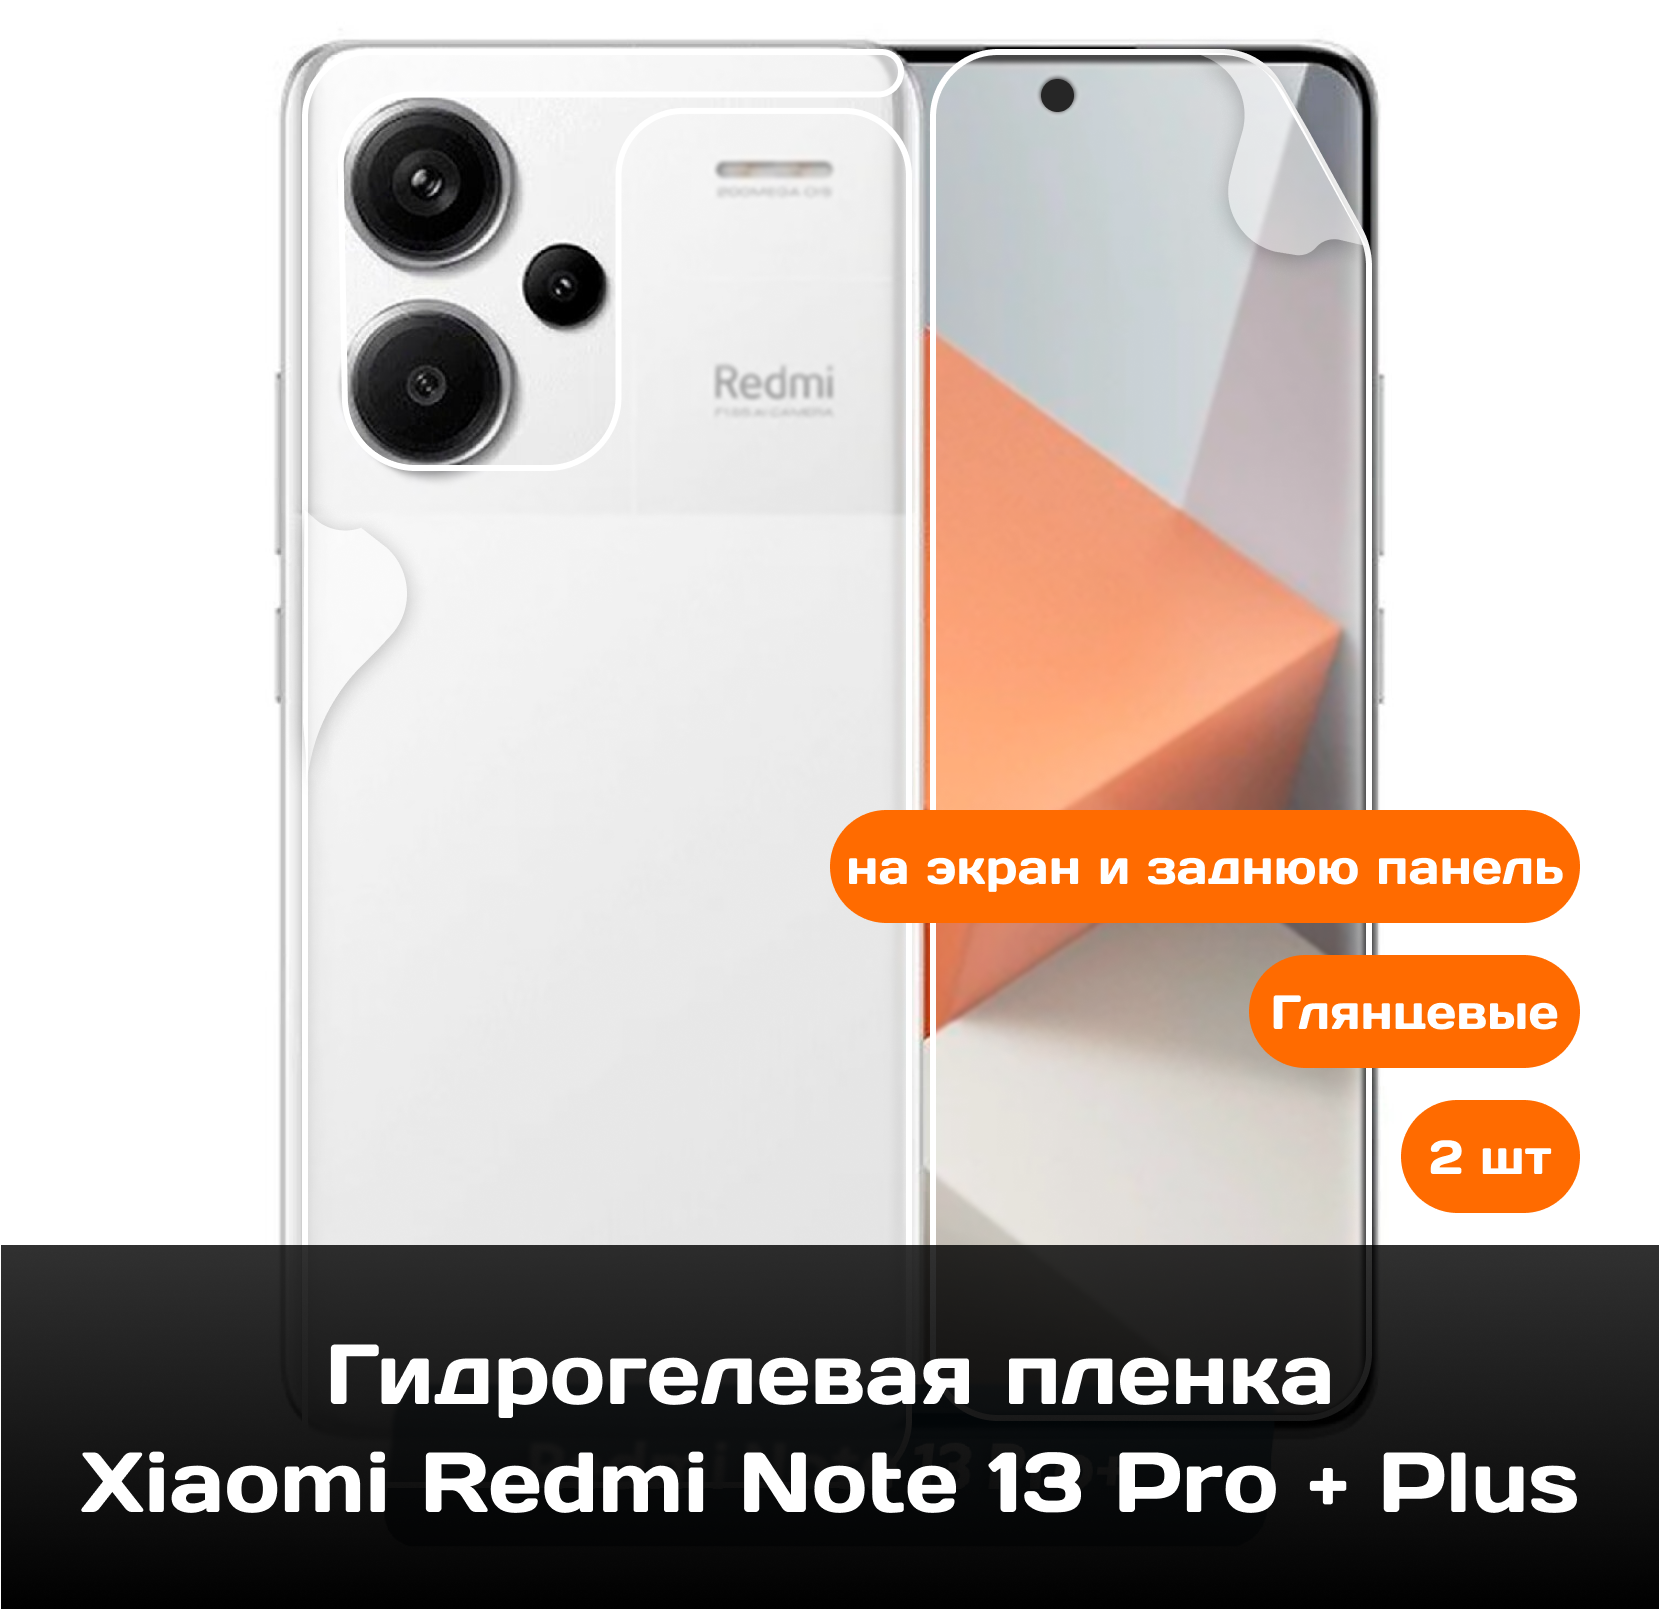 Гидрогелевая пленка для Xiaomi Redmi Note 13 Pro + Plus на экран и заднюю панель / Защитная противоударная пленка 2 шт